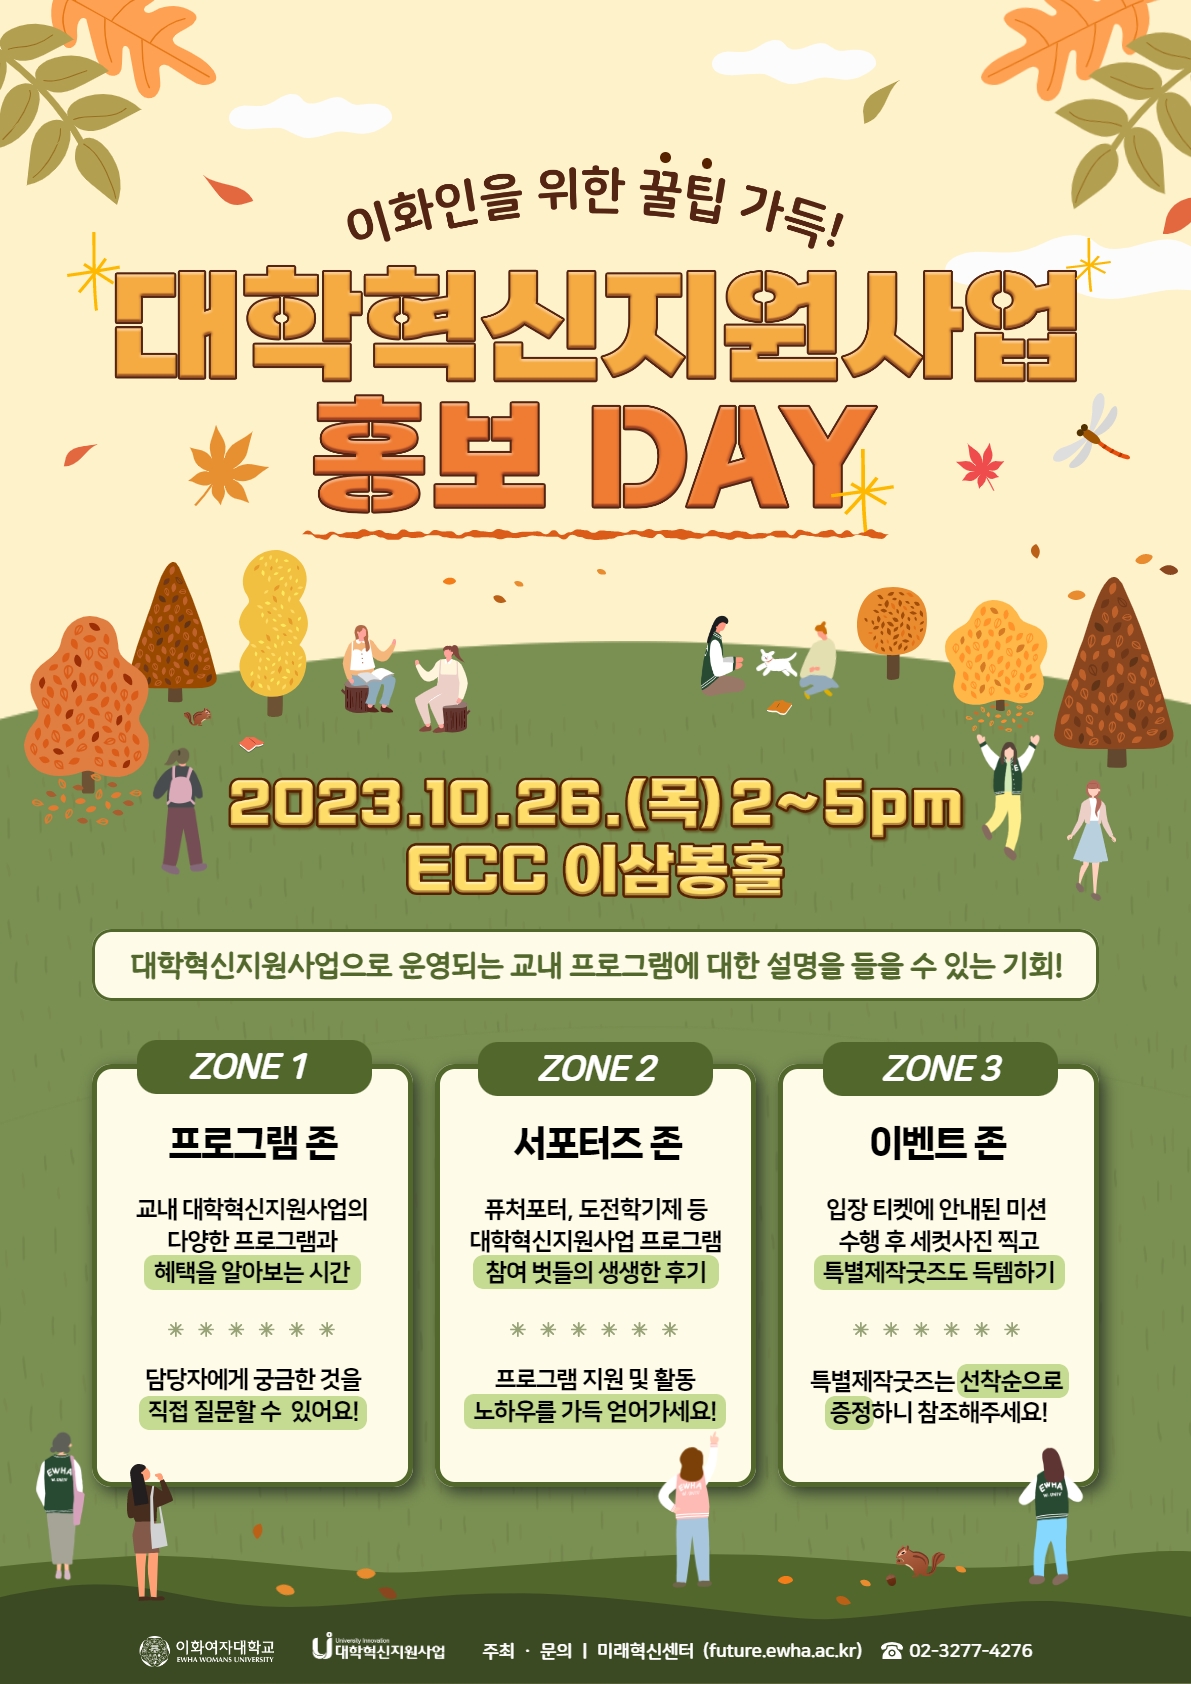 2023 대학혁신지원사업 홍보 DAY 행사 개최: 2023. 10. 26.(목) 14:00~17:00, ECC 이삼봉홀